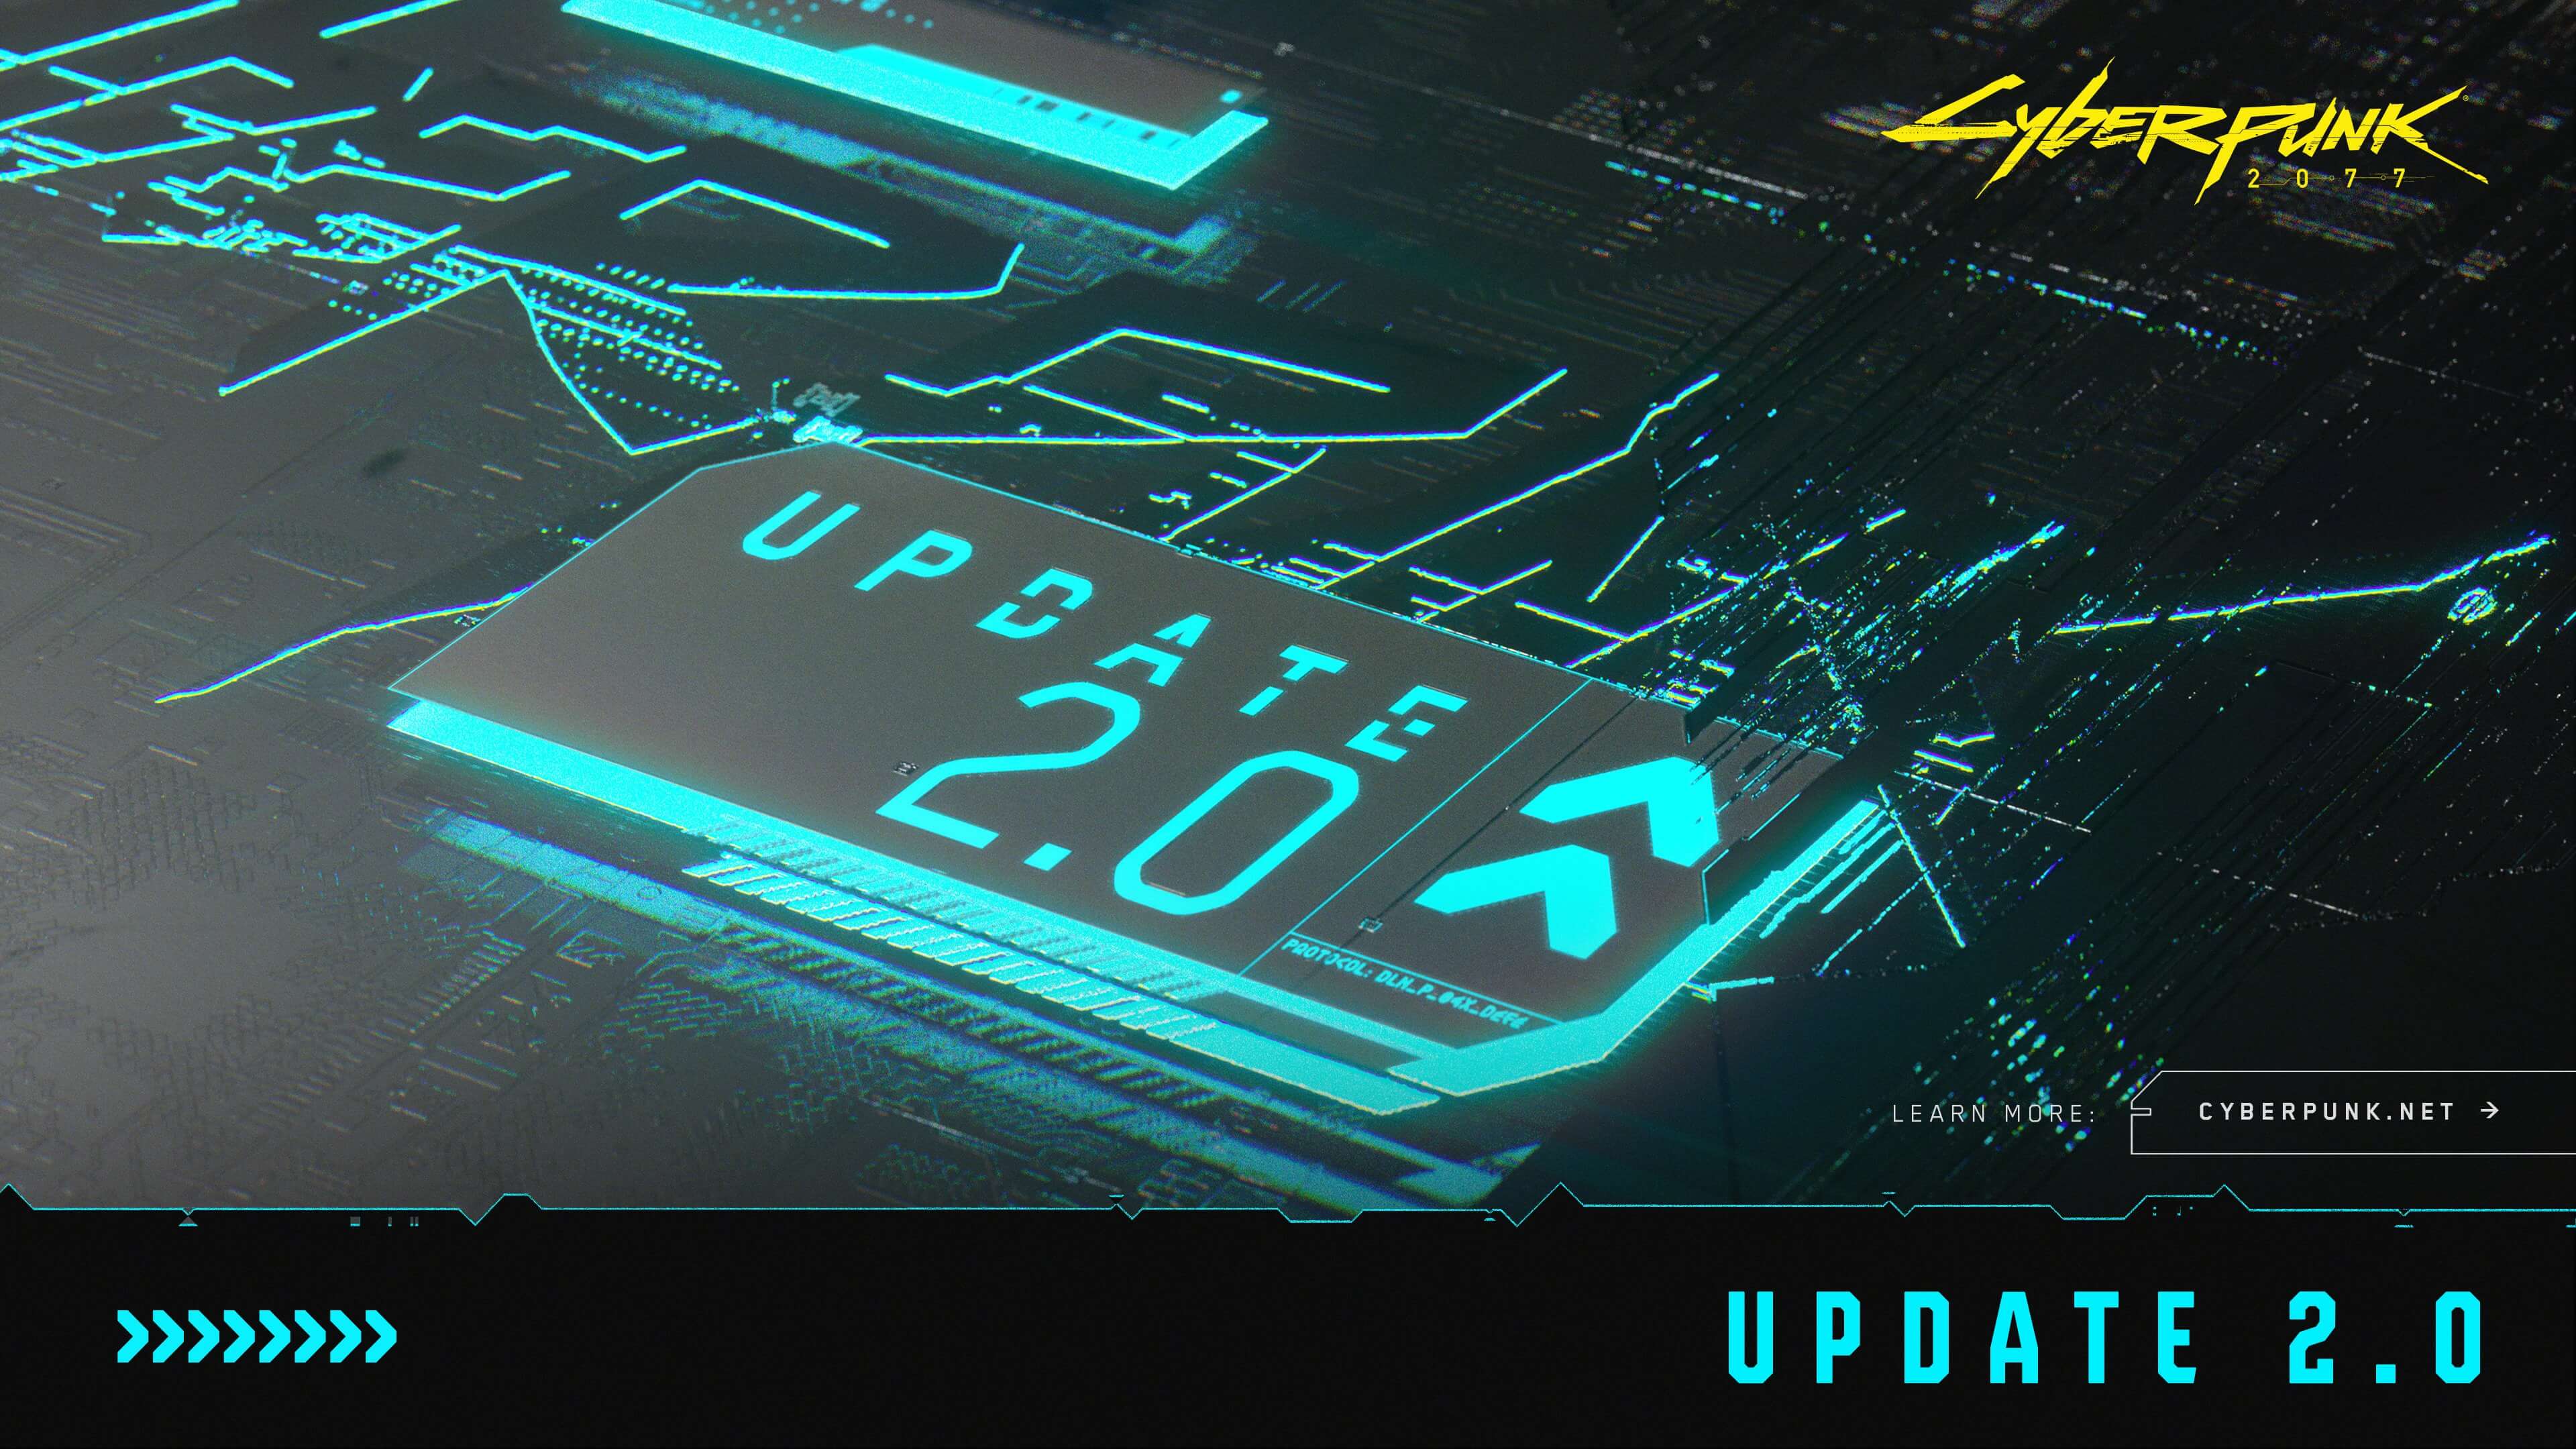 Cyberpunk 2077 update 2.0